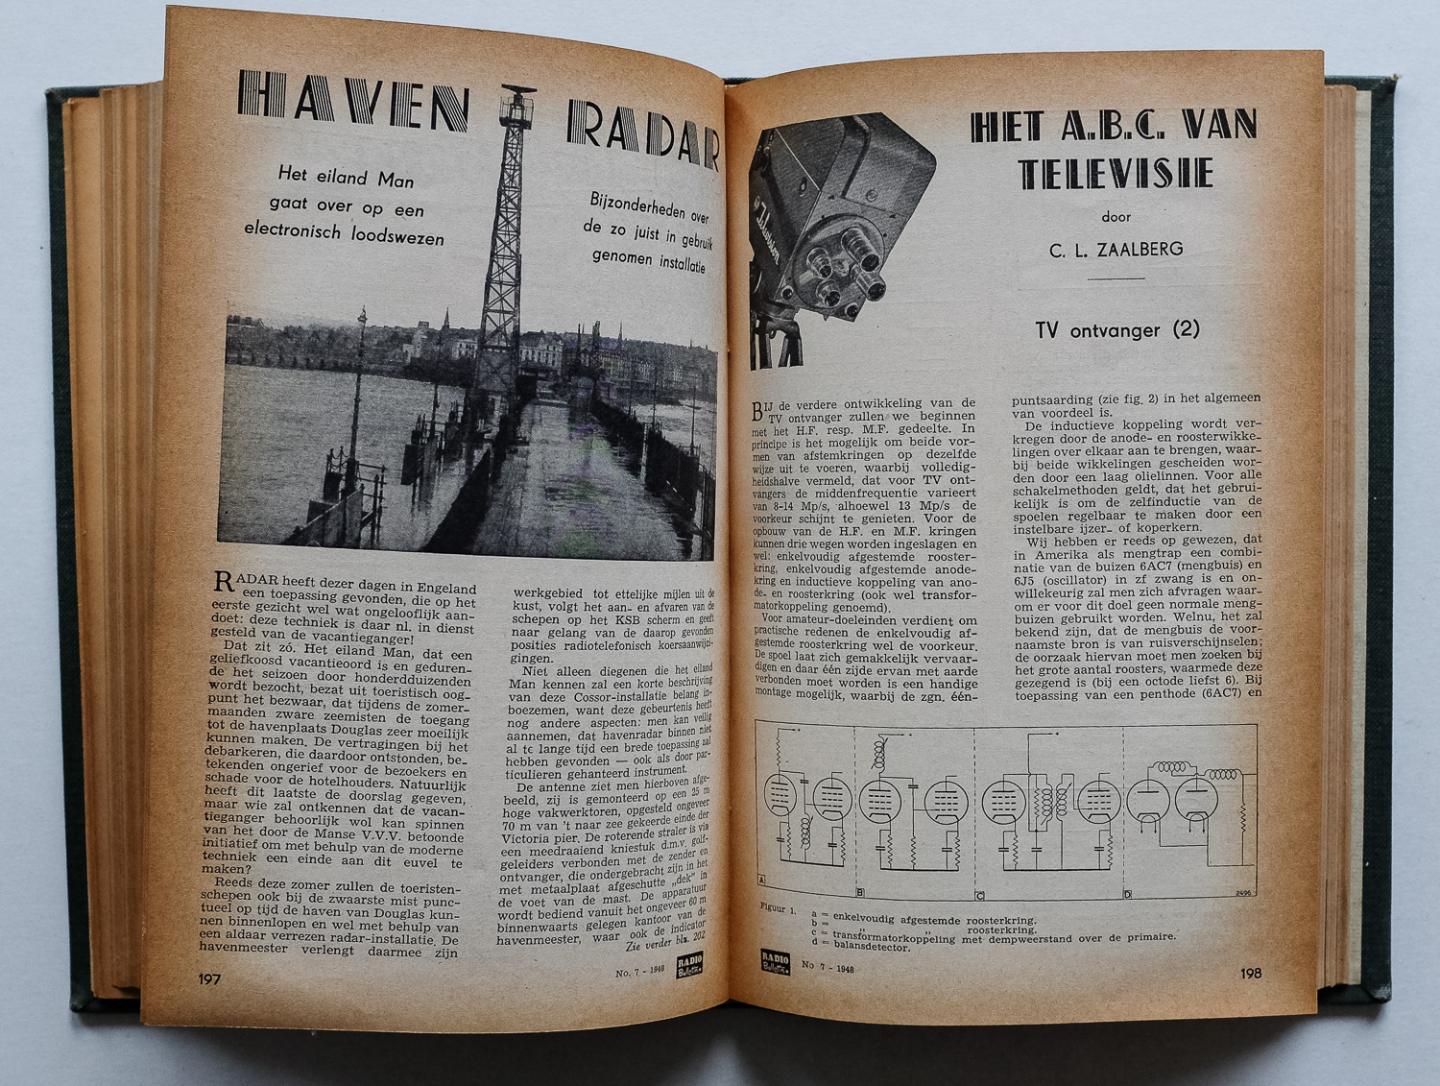 Radio Bulletin, AMROH - Radio Bulletin 1948 (12 nummers compleet, 363 pag.) - inclusief de omslagen en de index